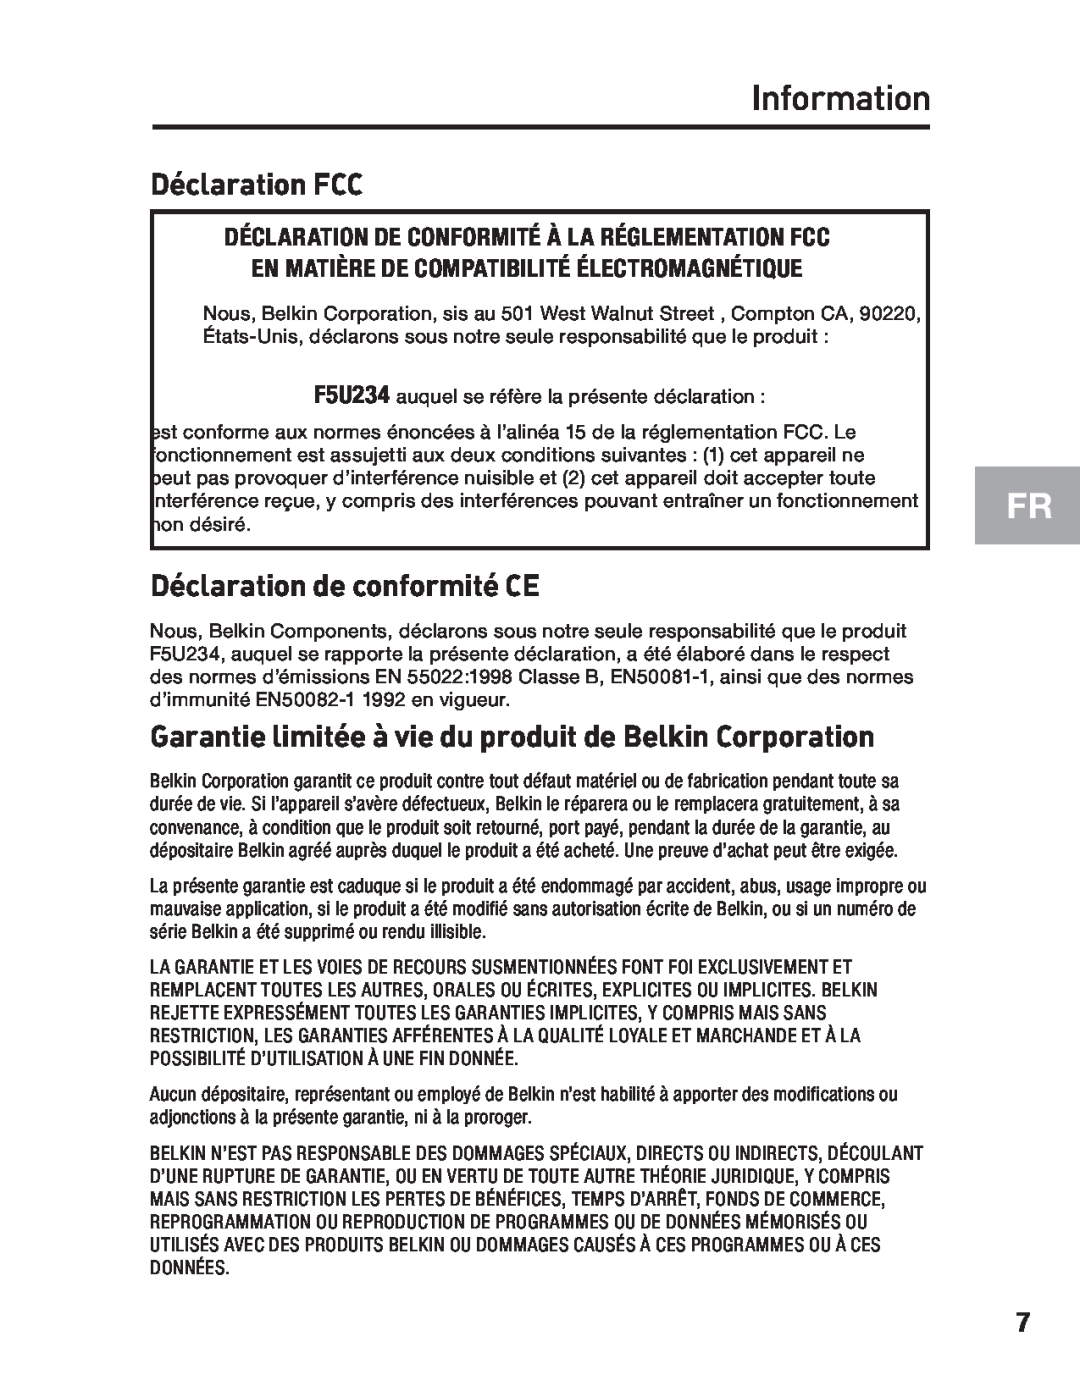 Belkin F5U234 Déclaration FCC, Déclaration de conformité CE, Garantie limitée à vie du produit de Belkin Corporation 